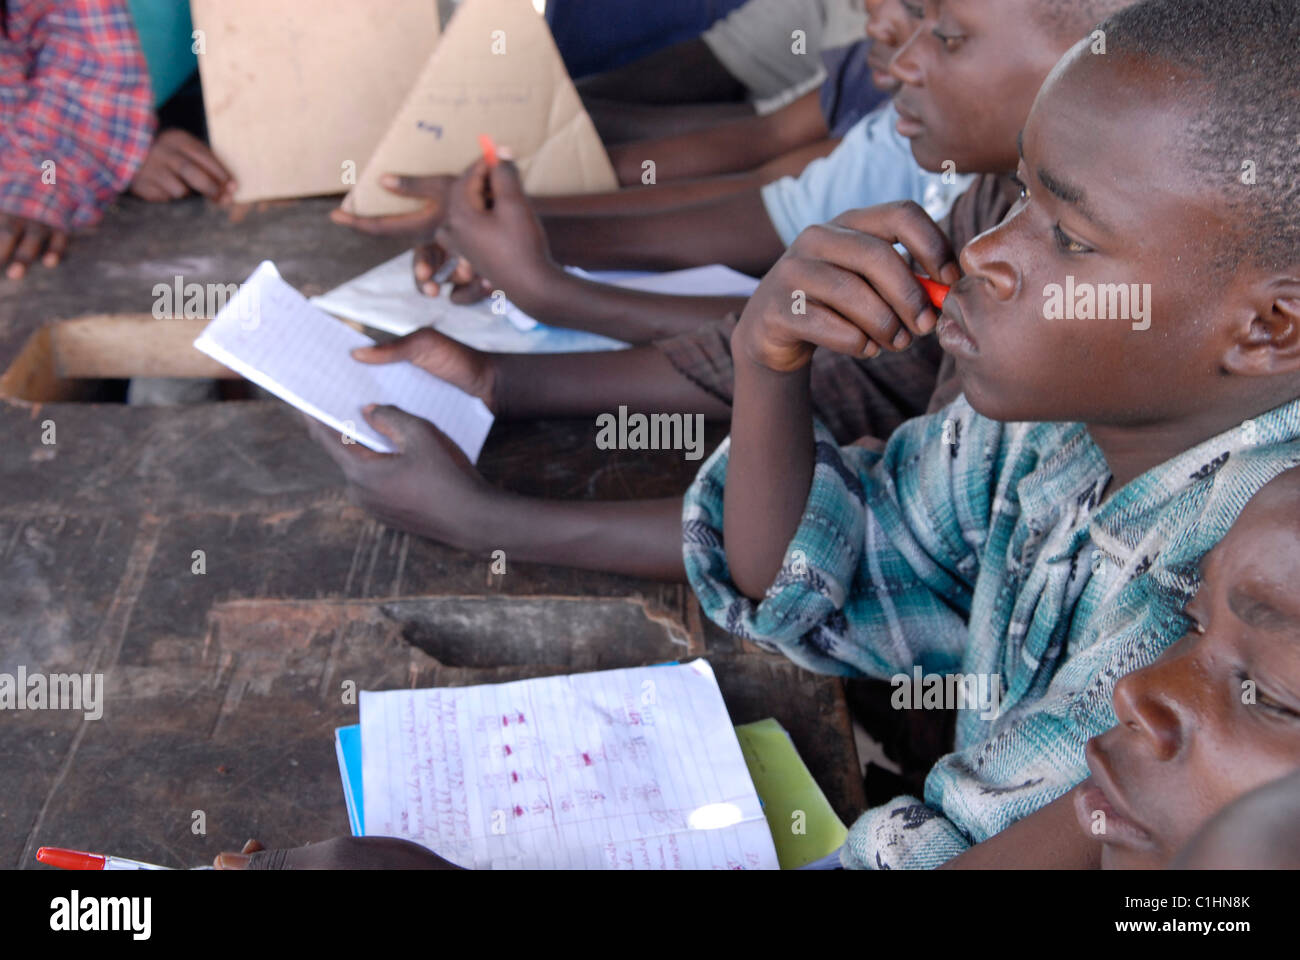 Les anciens enfants soldats apprennent à lire et à écrire le français au Centre de transit et d'orientation pour les anciens enfants soldats, géré par le CAJED, une ONG congolaise soutenue par l'UNICEF qui travaille avec des enfants et des jeunes défavorisés dans la ville de Goma. Congo RD Afrique Banque D'Images